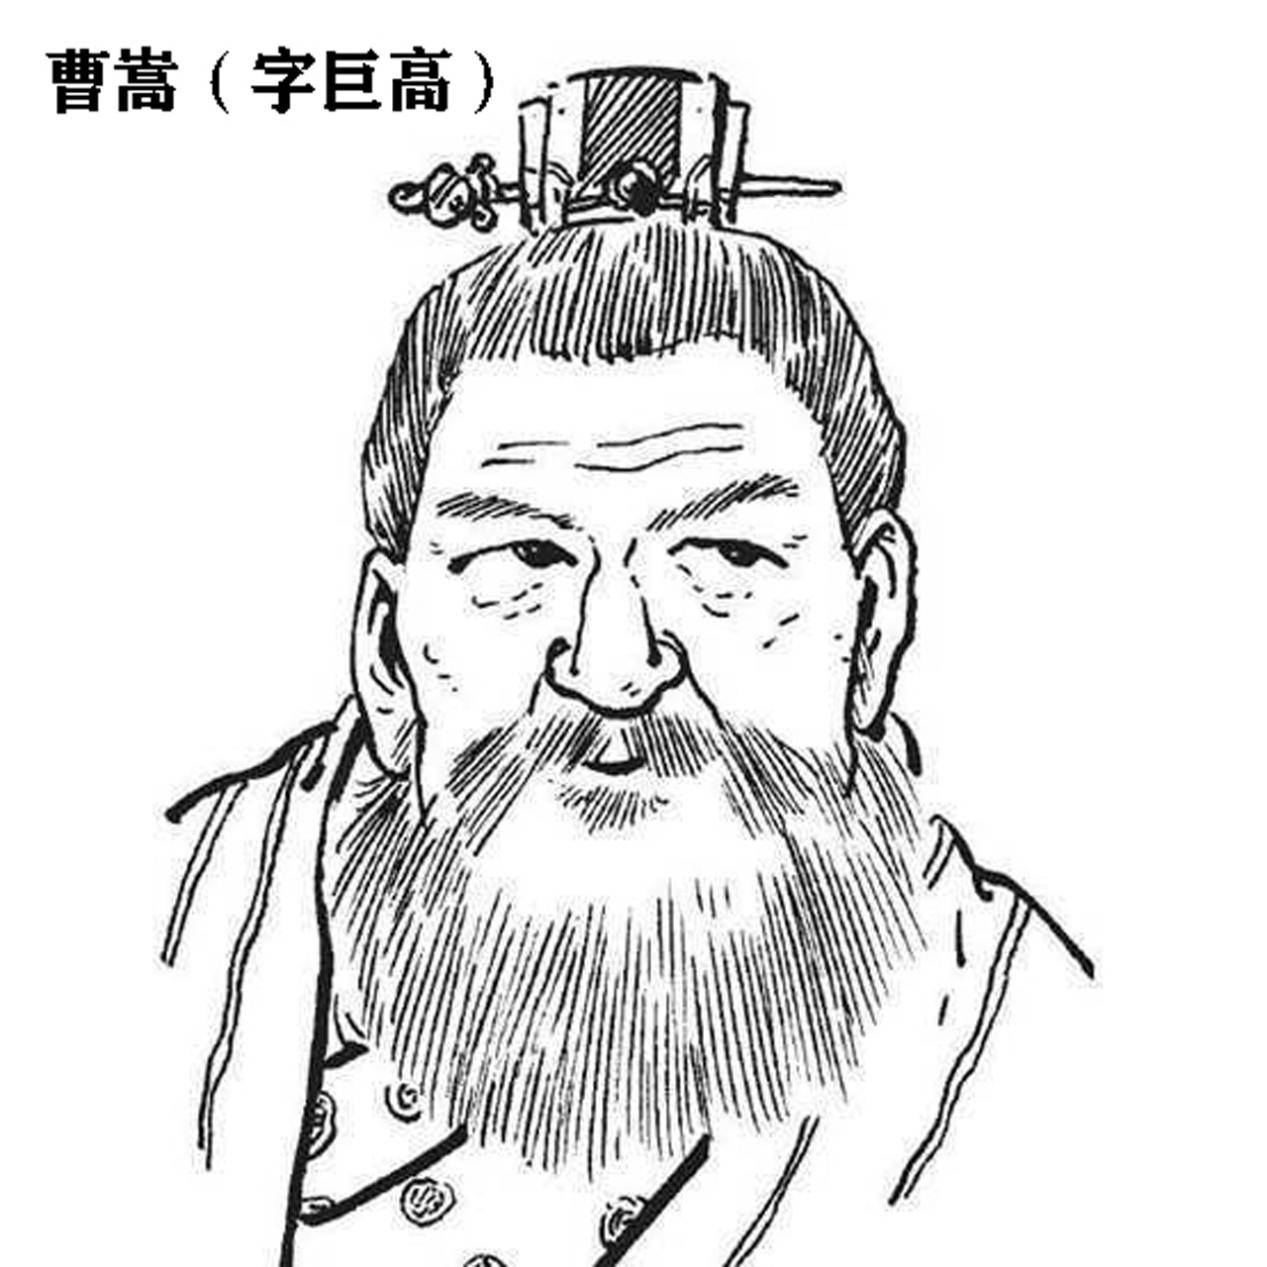 包括《三国志》的作者陈寿都在后面写上曹操的父亲曹嵩"莫能审其生出